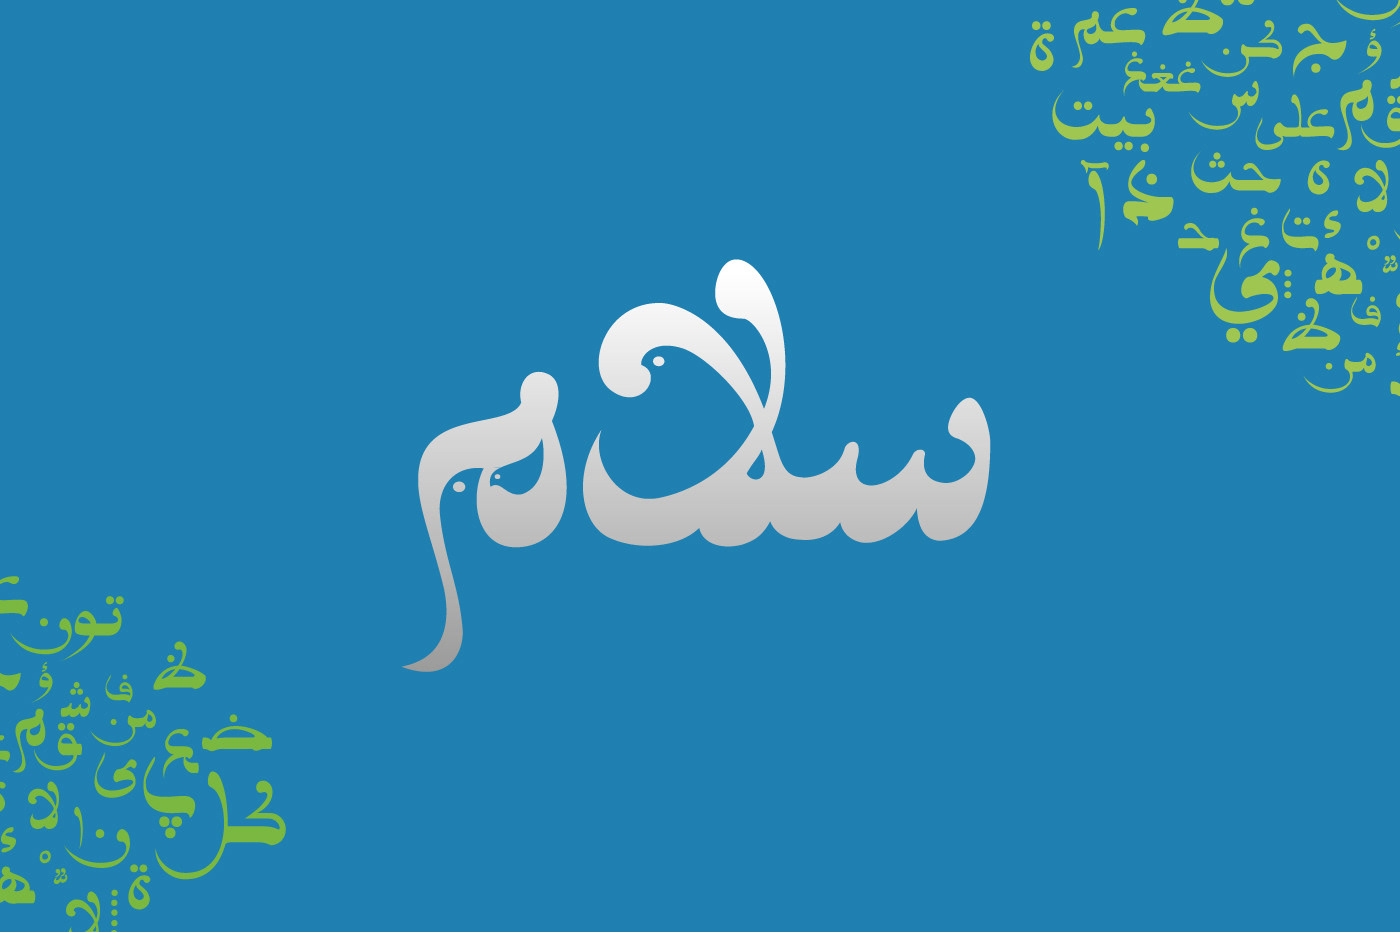 Aqmar Free Font - arabic